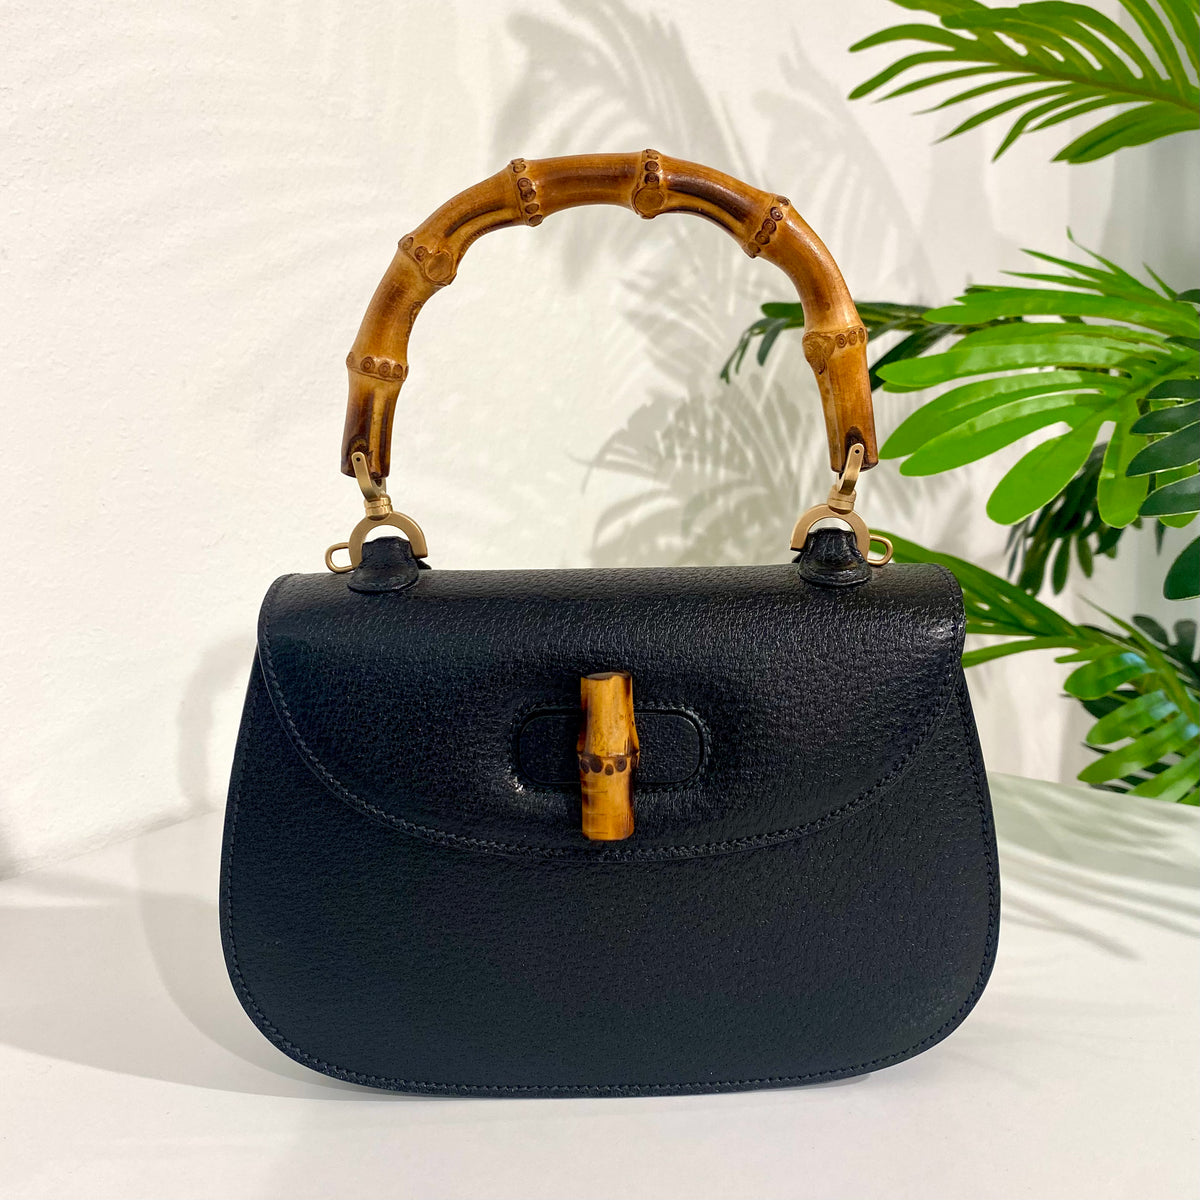 Gucci Vintage Bamboo Top Handle Handbag in Black – como-vintage